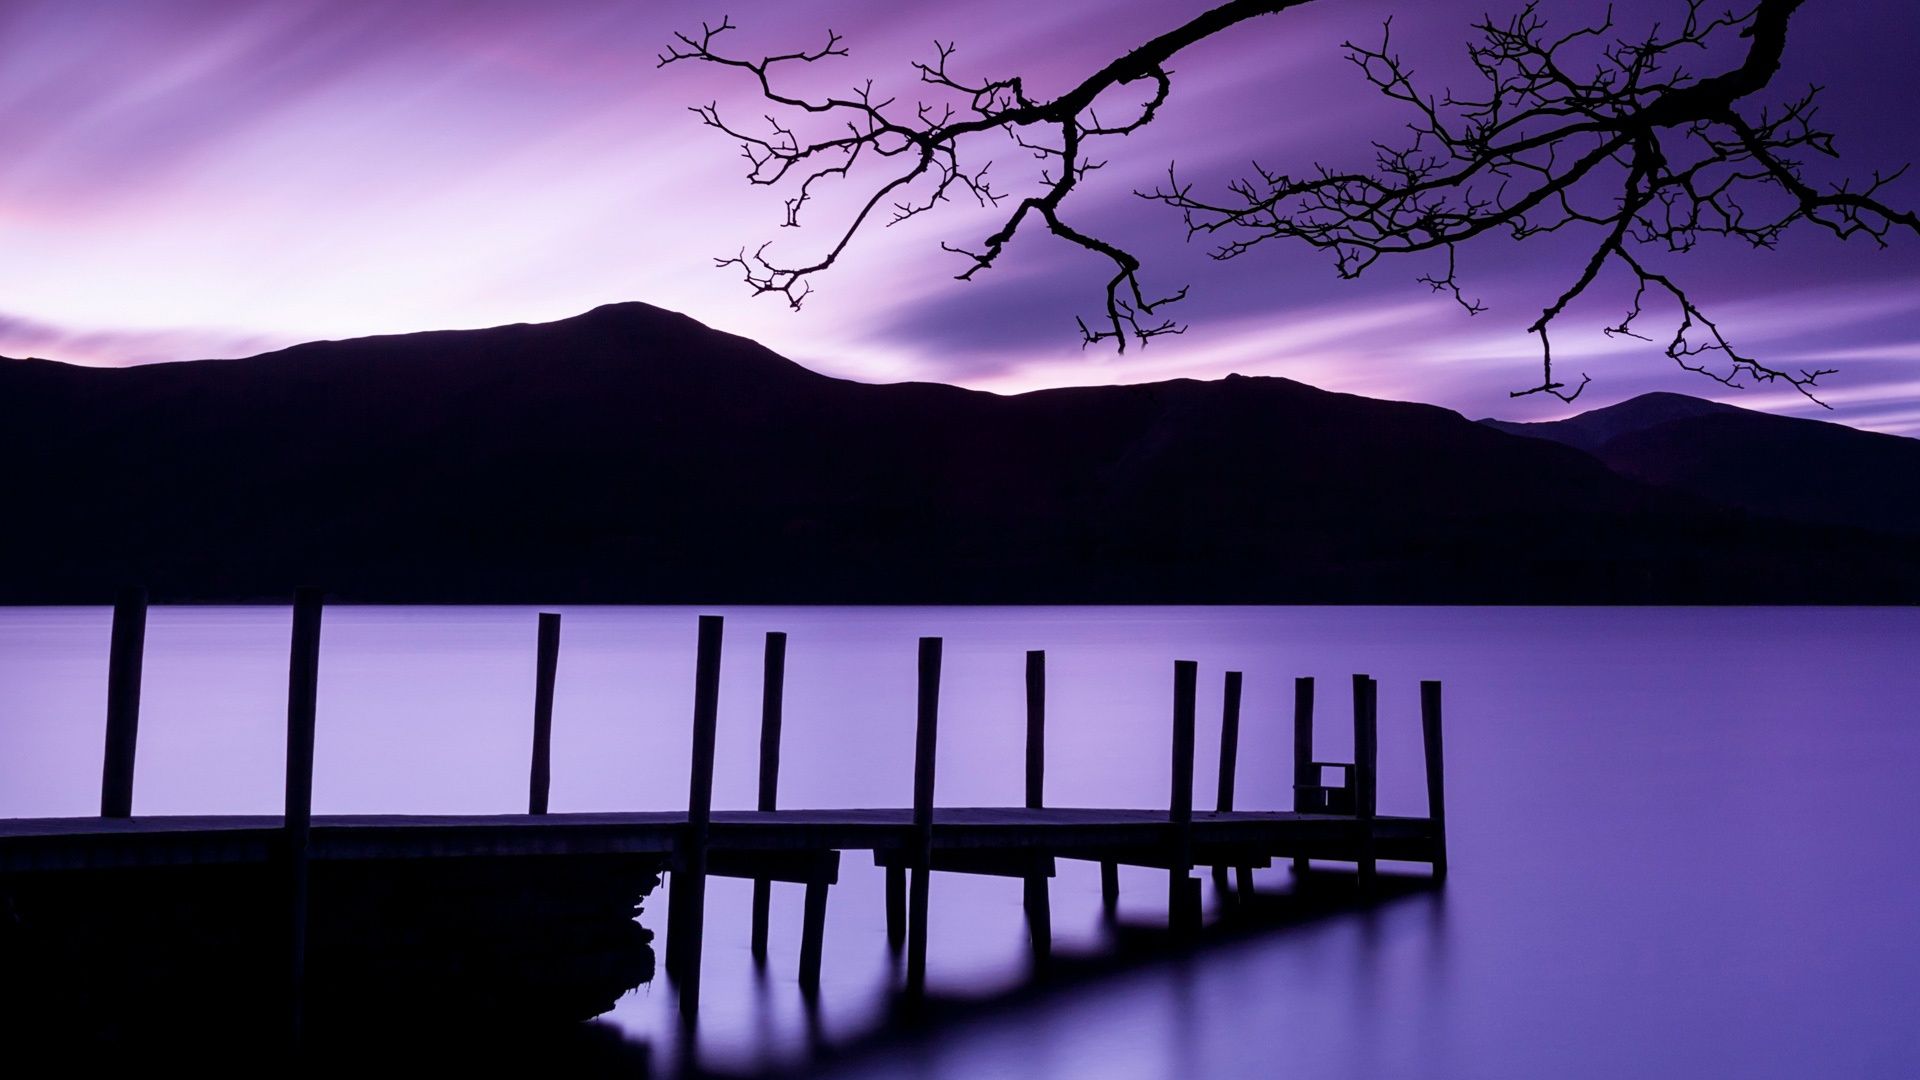 Purple Dusk Wallpaper in jpg format for free download